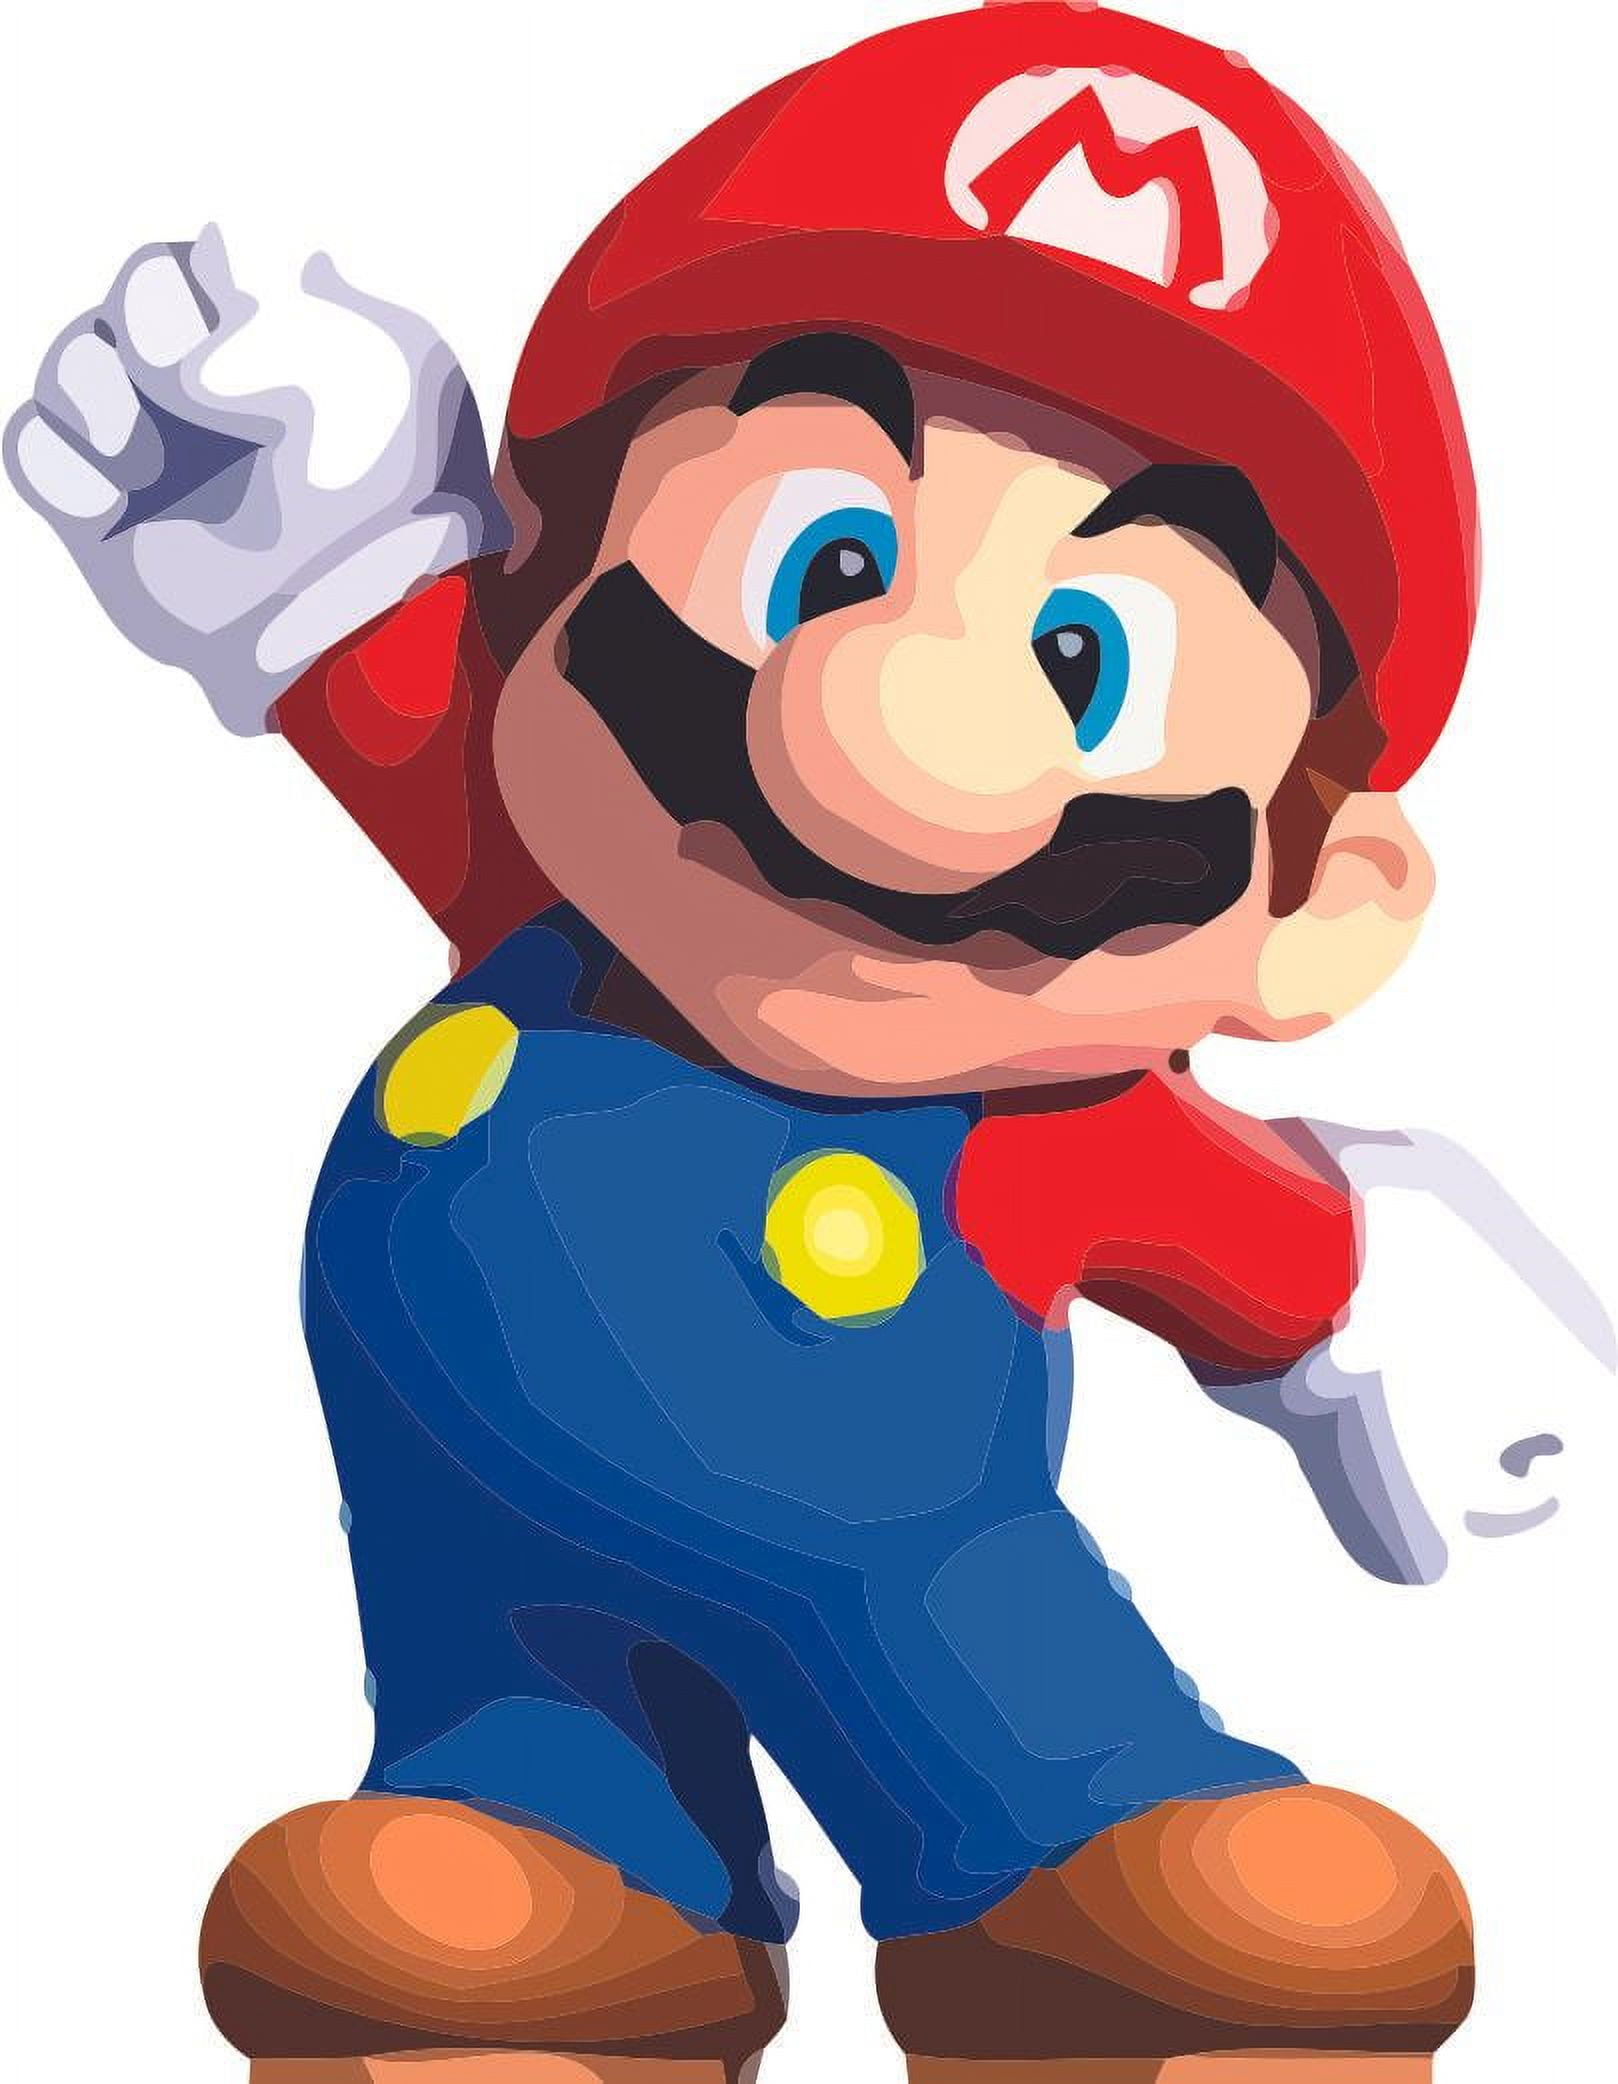 Super Mario Bros: A timeless classic for autistic children - EmoGami